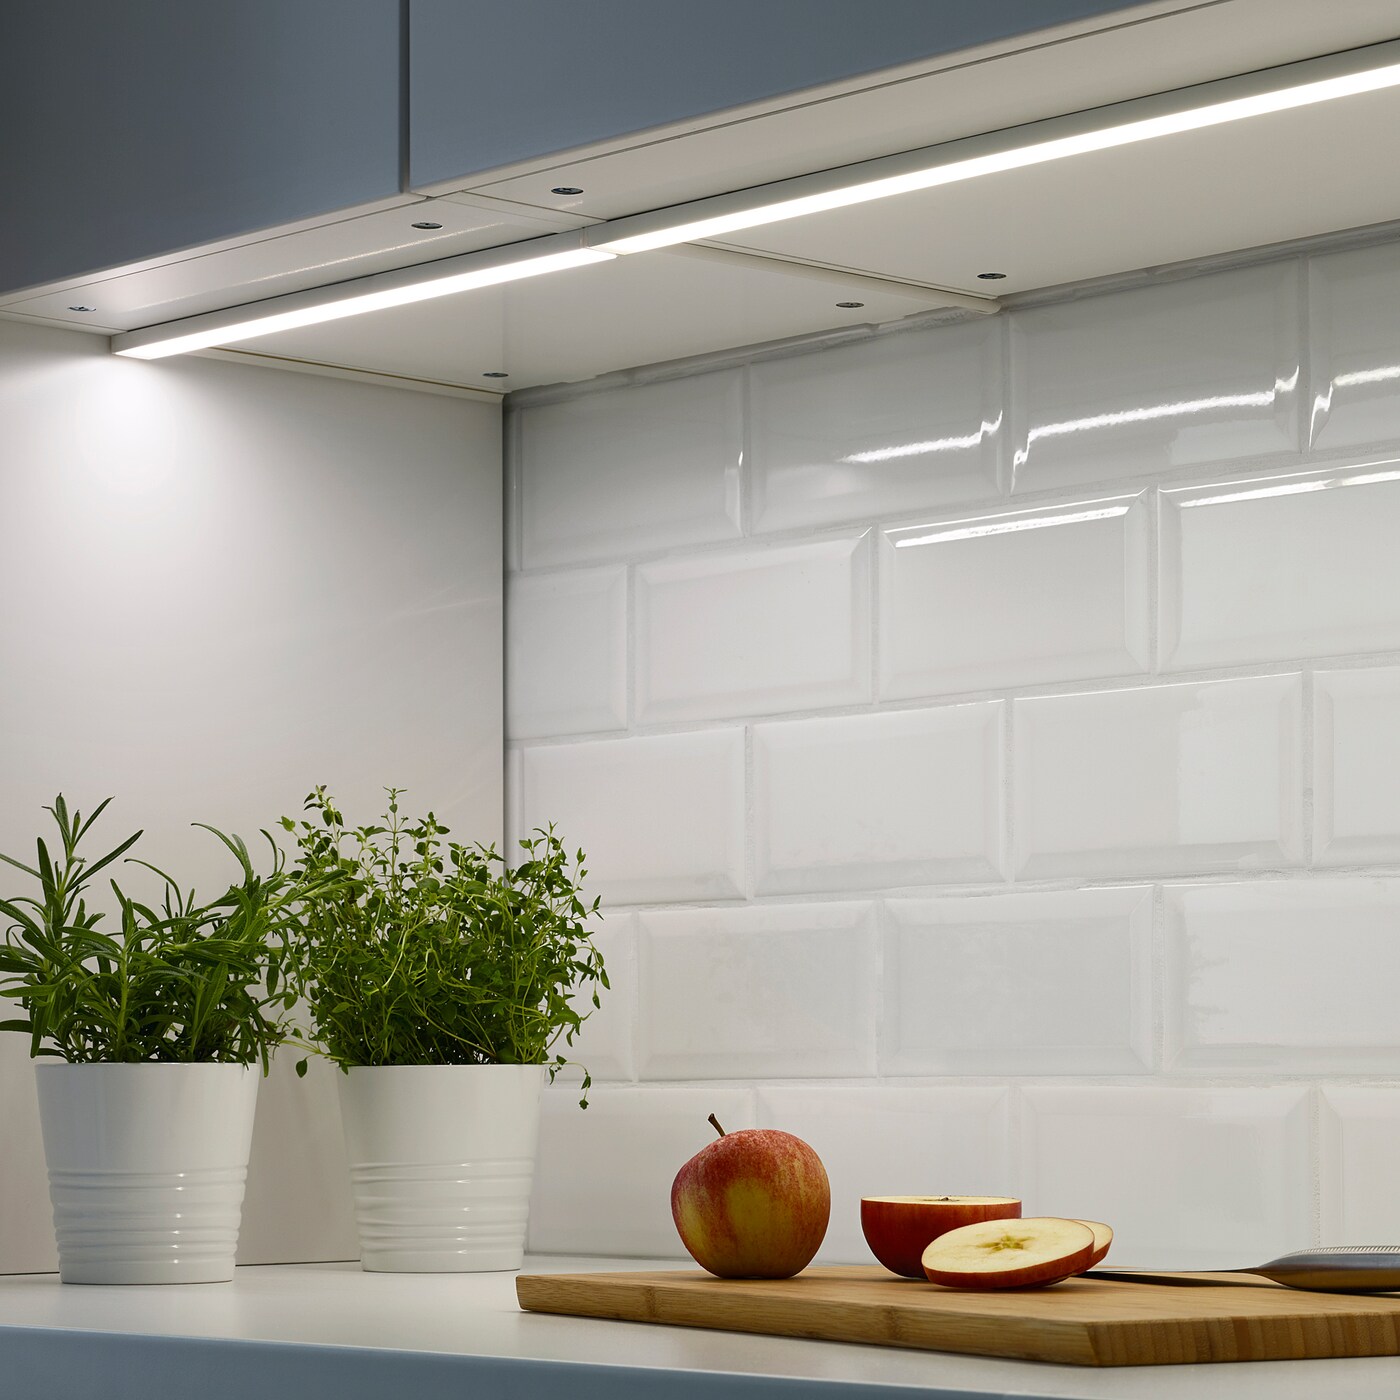 Подсветка для кухни встроенная: Подсветка кухни ИКЕА - купить освещение рабочей зоны на кухне